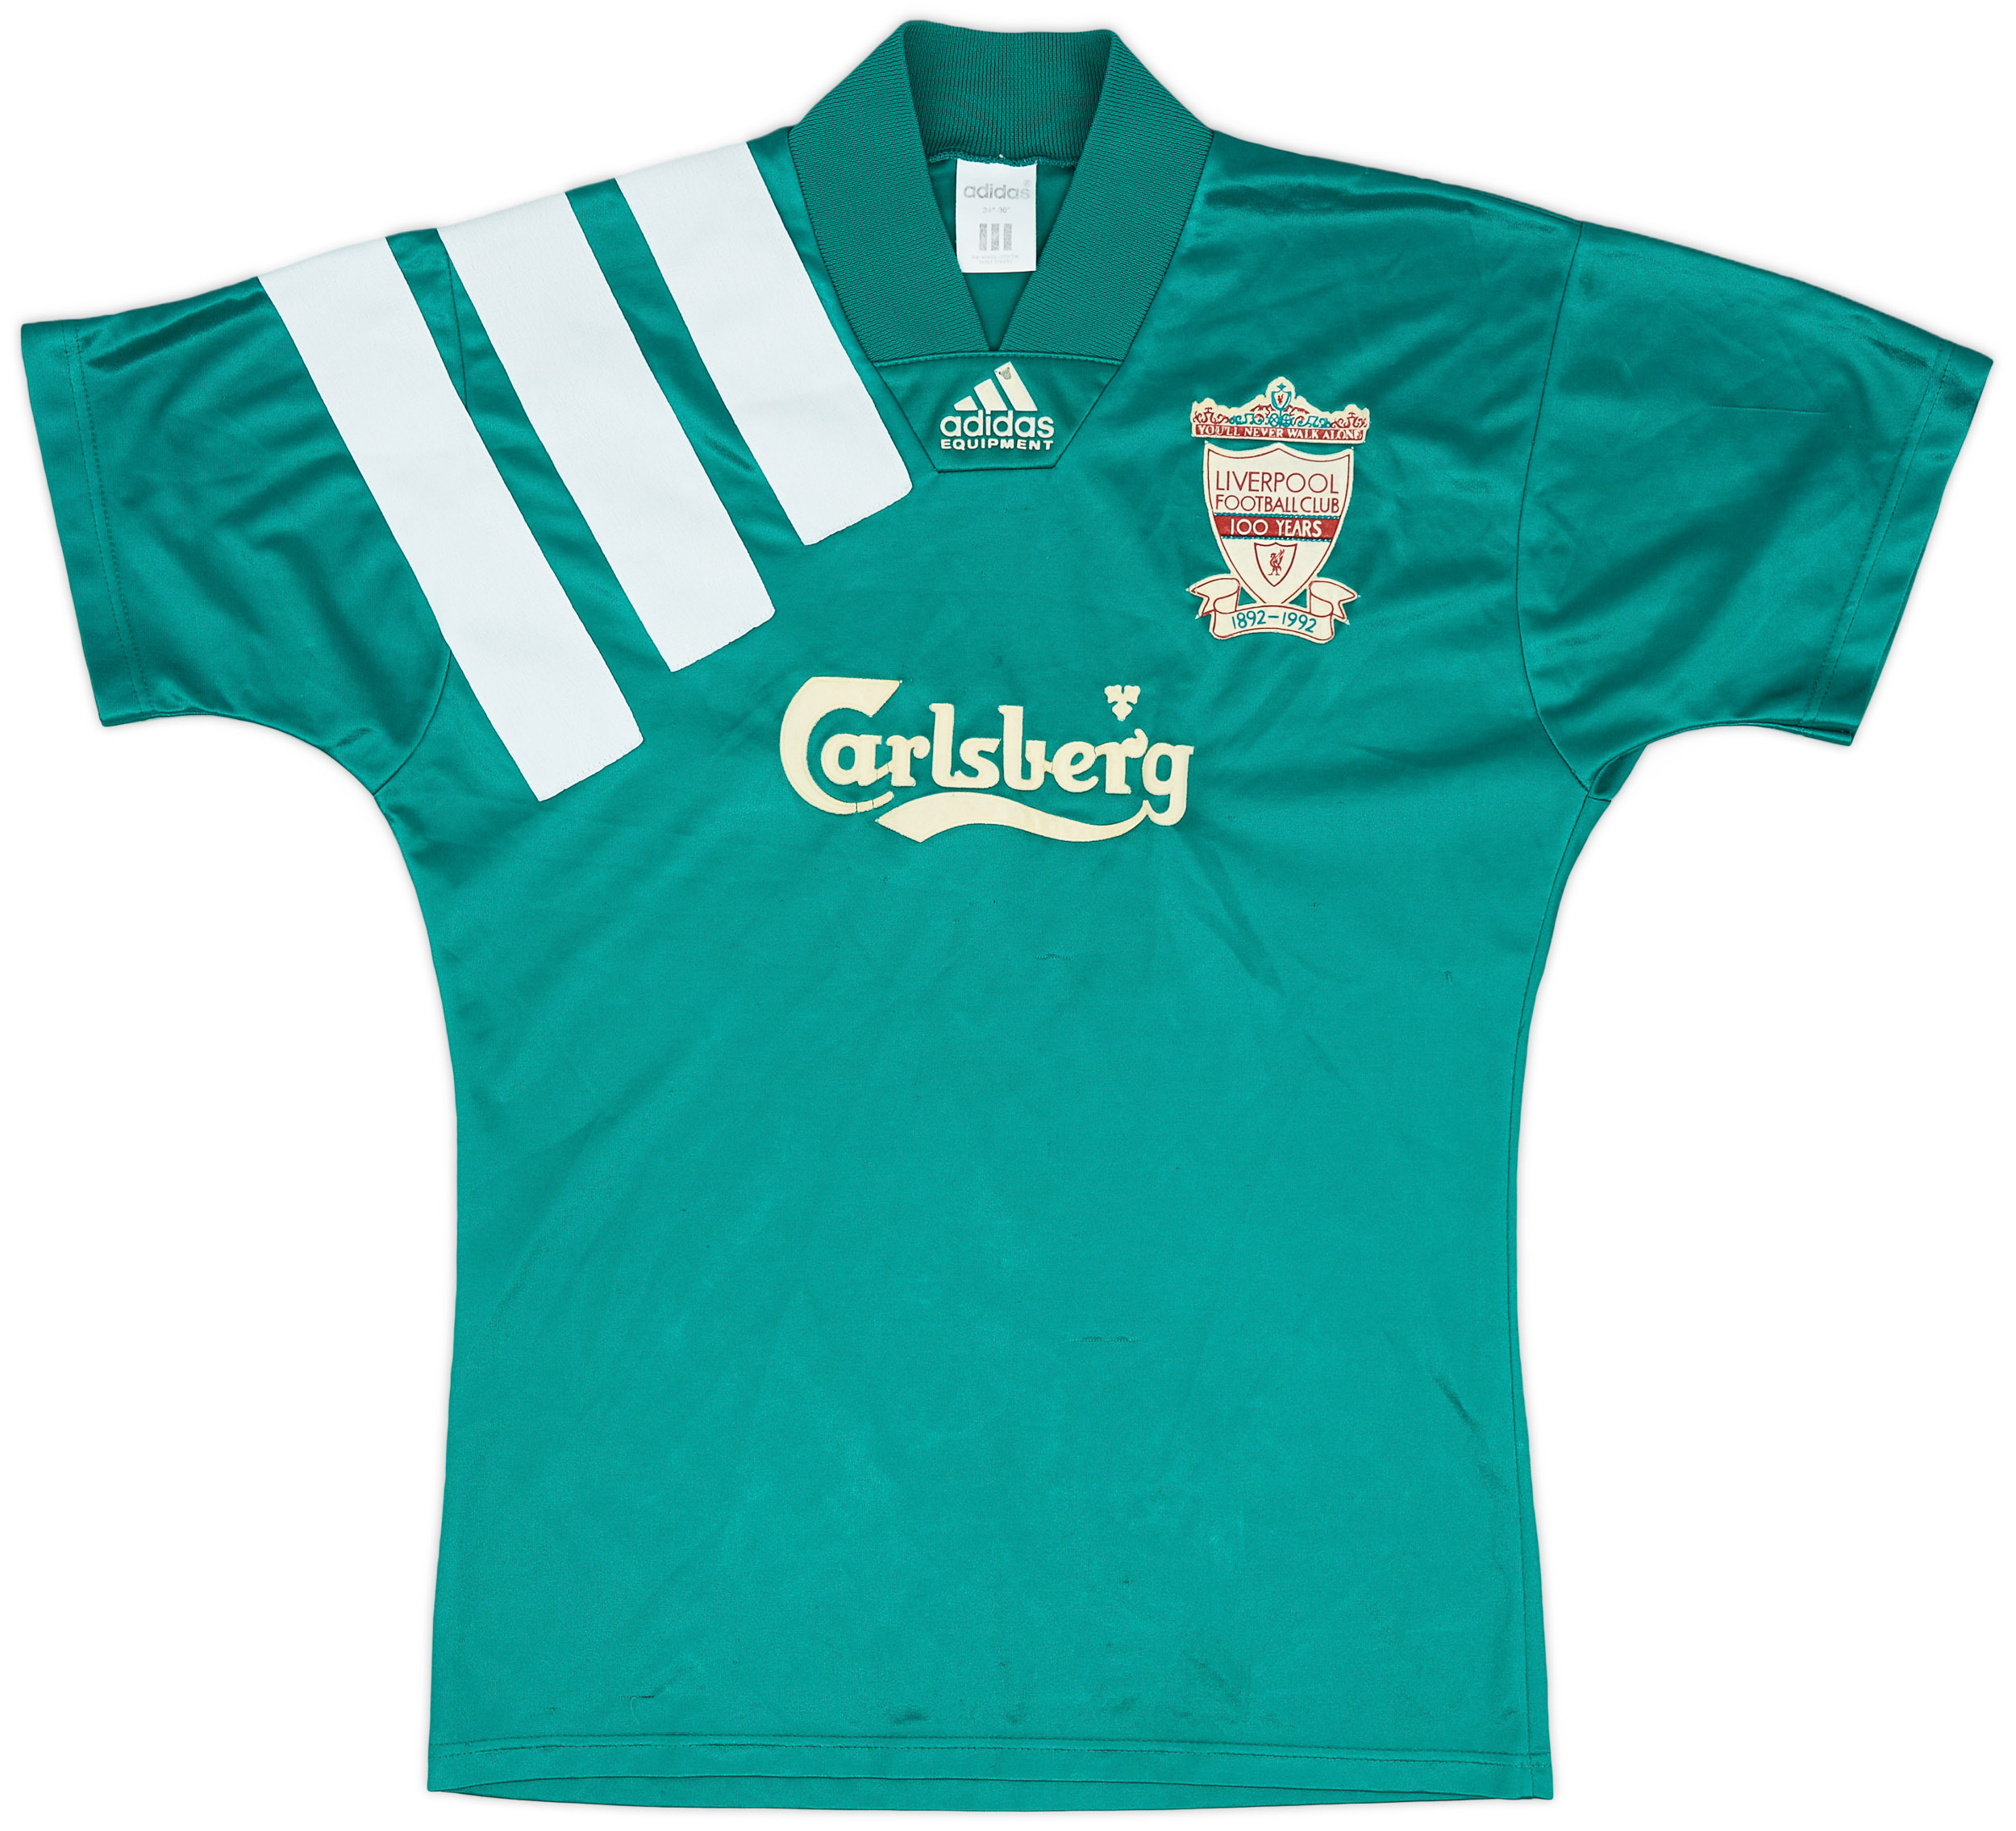 1992-93 Liverpool Centenary Away Shirt - 7/10 - ()